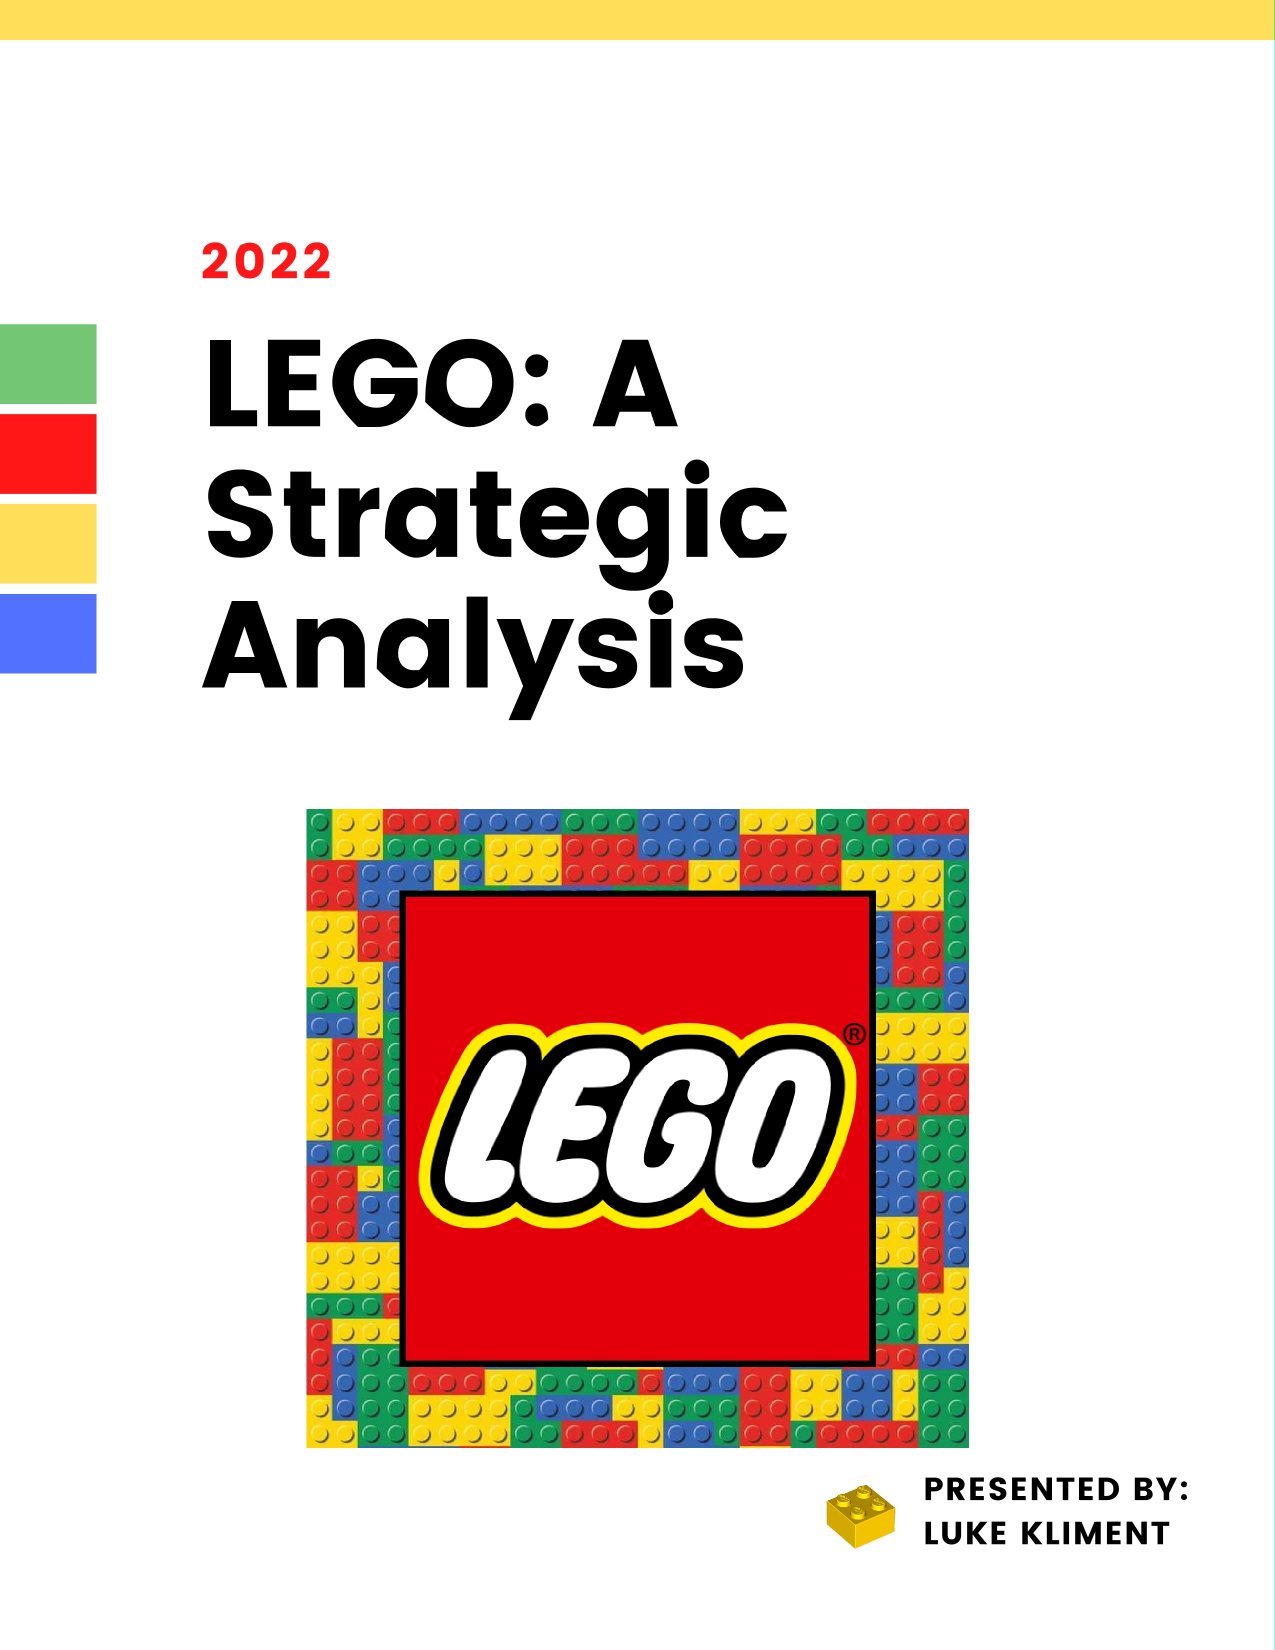 Strategic | Brickset: LEGO set guide and